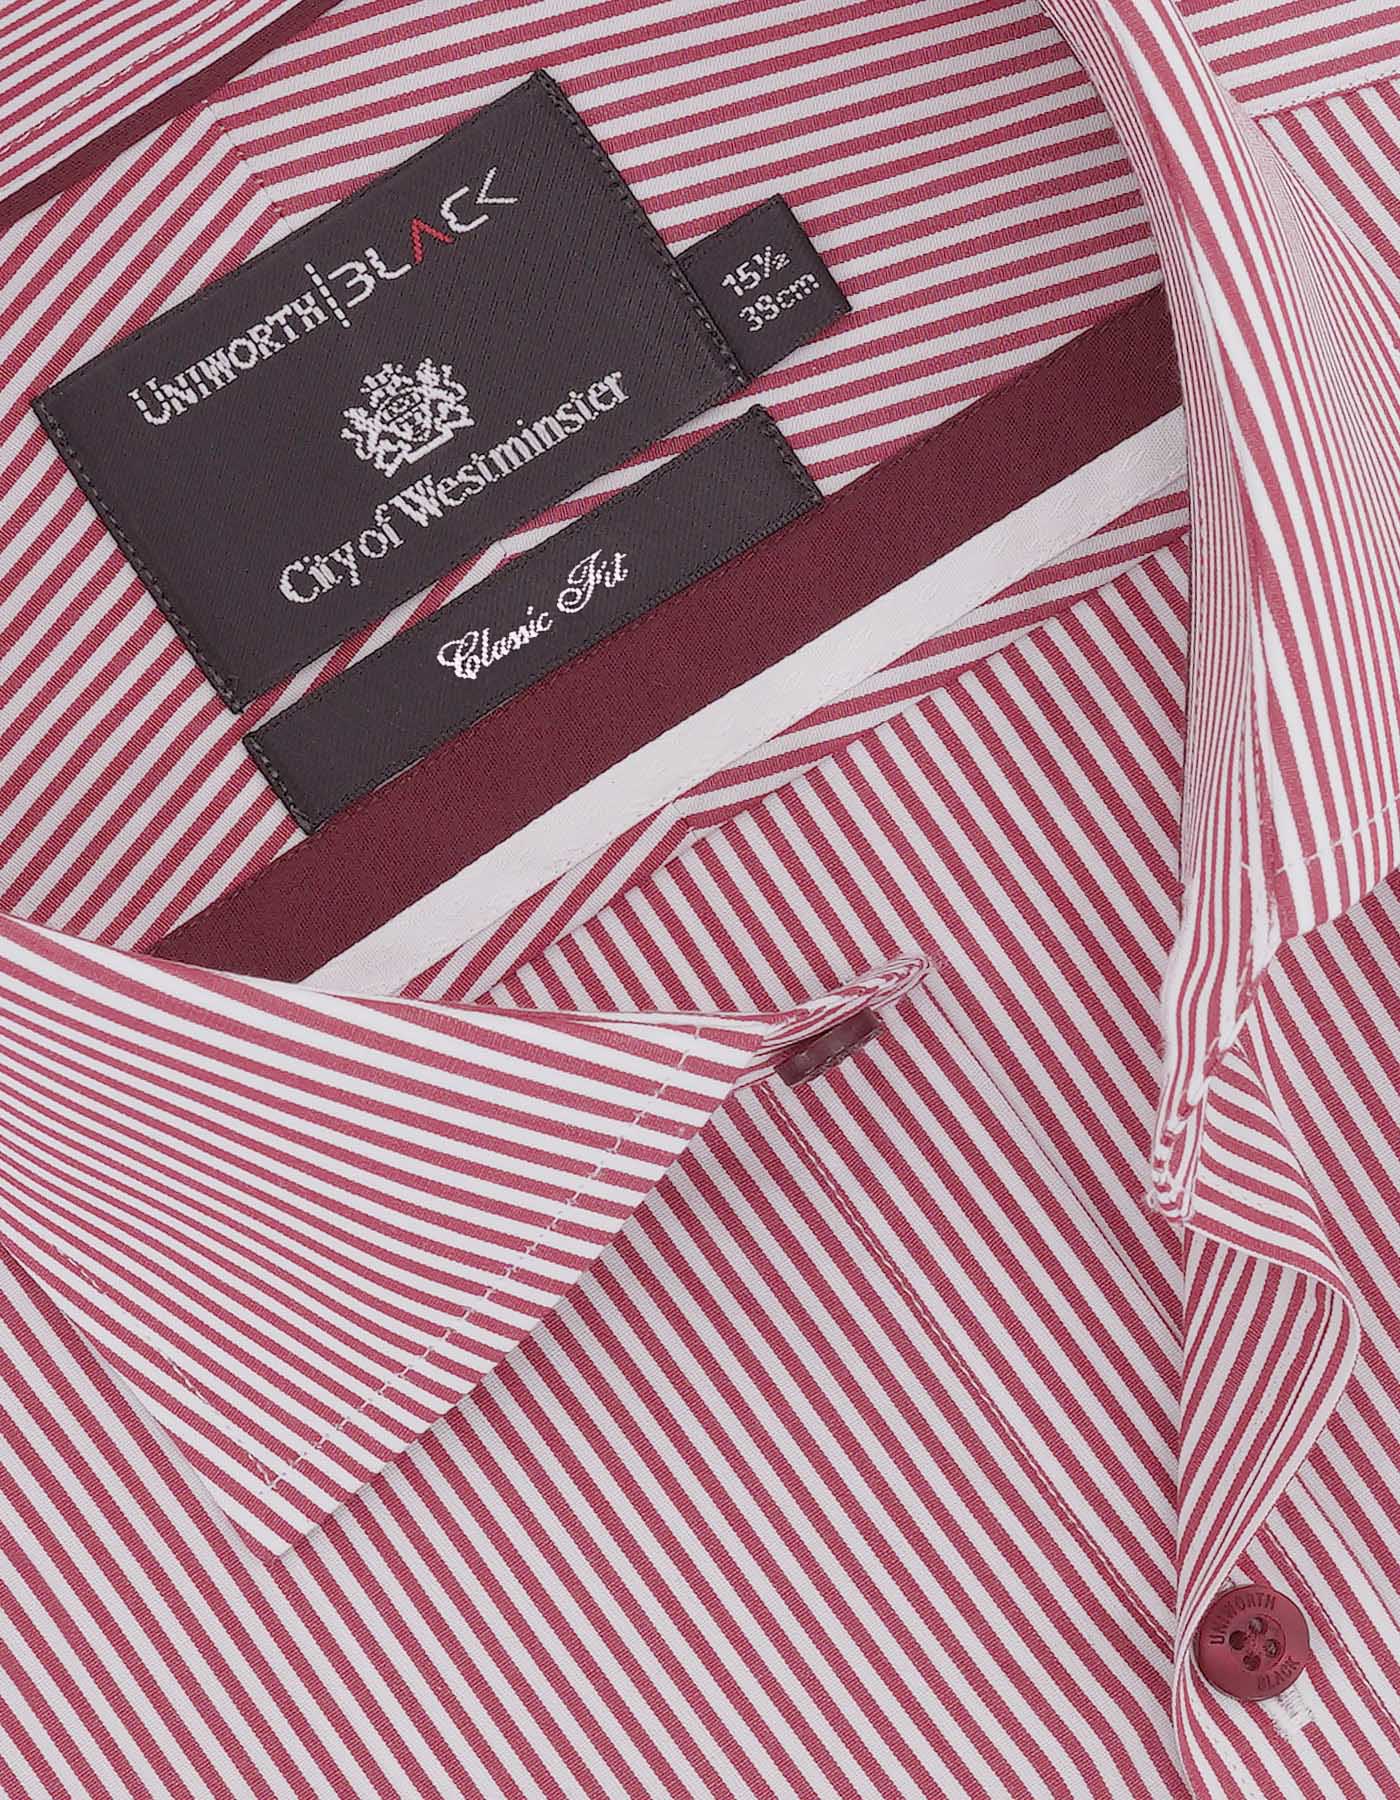 Stripe White Red Formal Shirt For Men